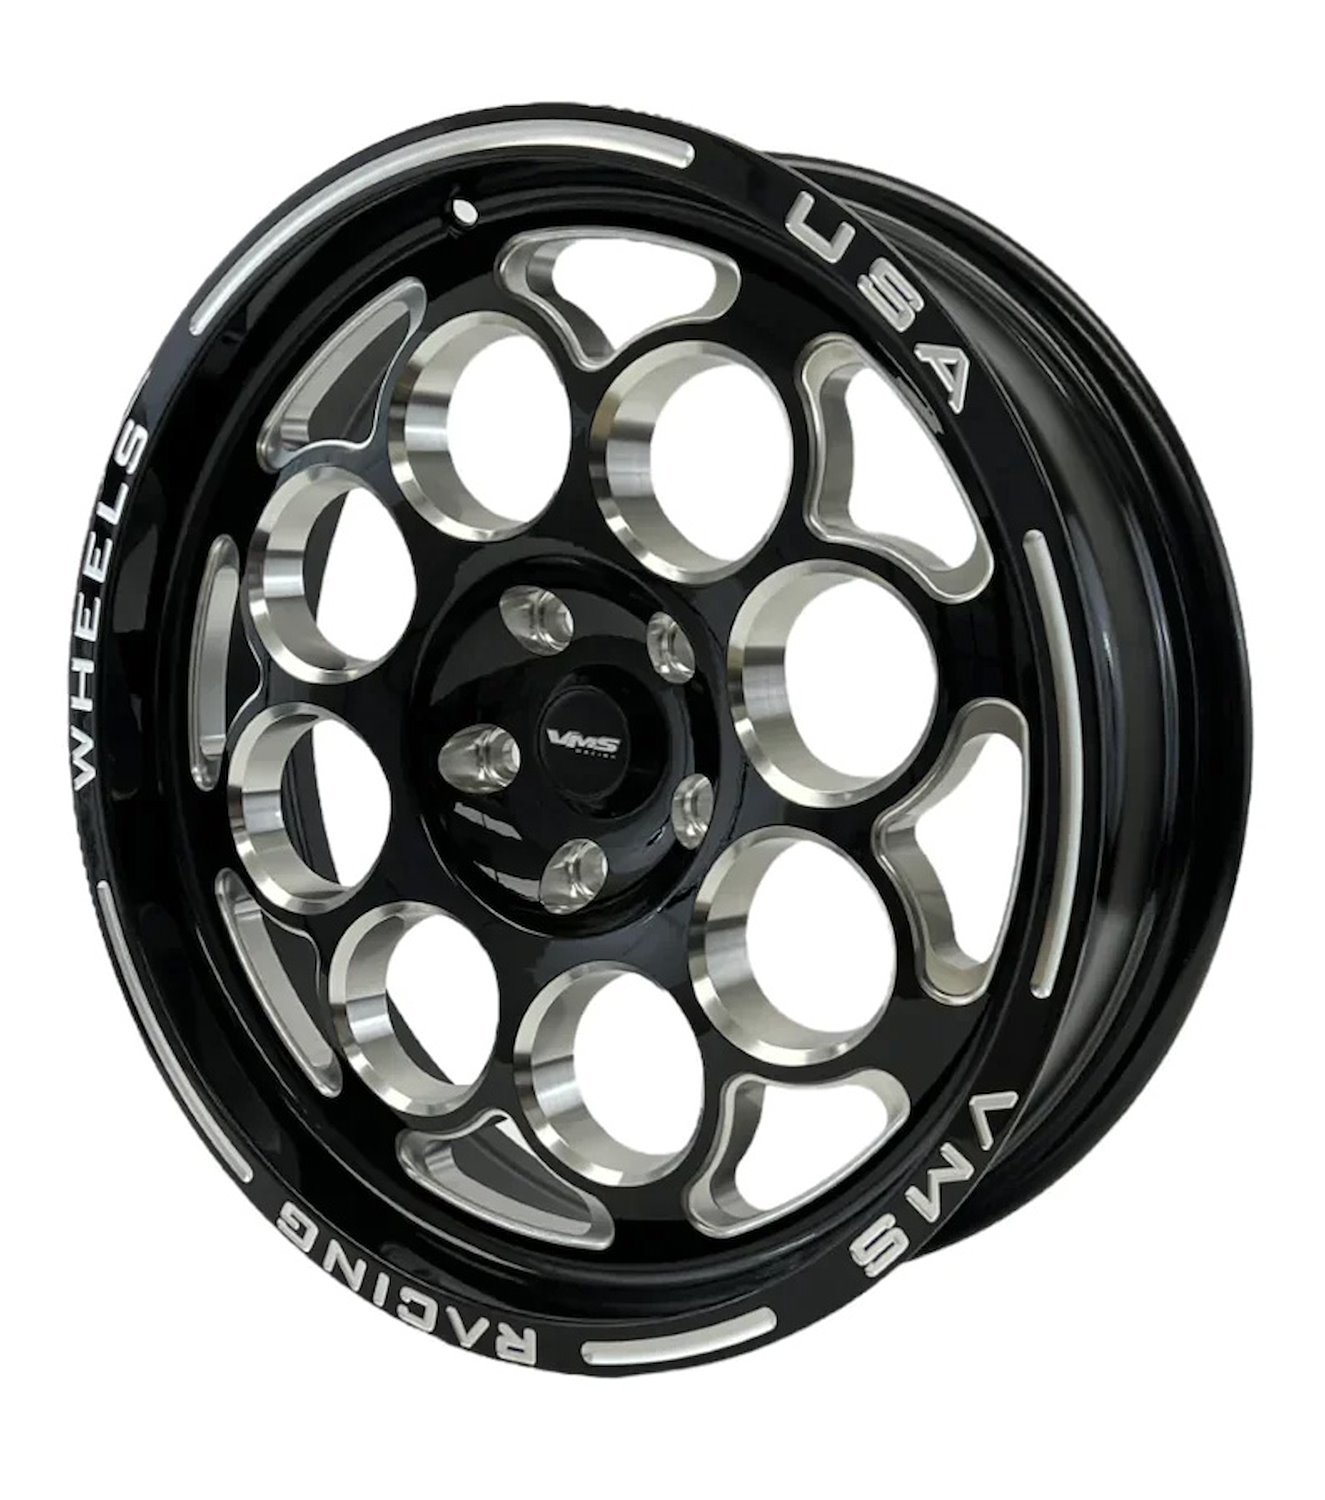 VWMO035 Modulo Wheel, Size: 18" x 5", Bolt Pattern: 5 x 4 3/4" (120.65 mm) [Finish: Gloss Black Milled]